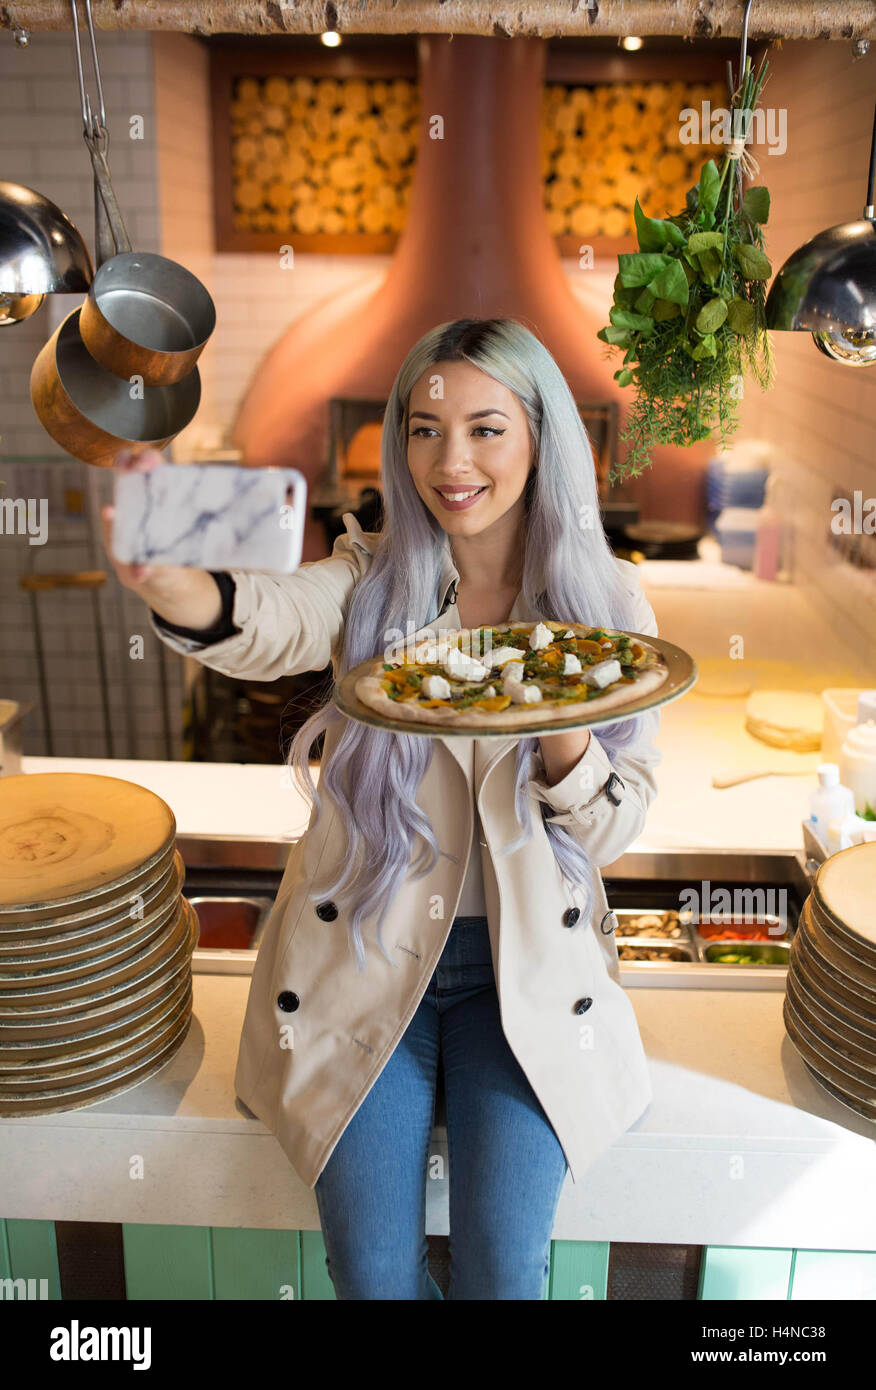 NUR zur redaktionellen Nutzung Social Media Influencer Leanne Lim Walker, 27, bildet Restaurantpersonal bei Zizzi im Londoner Covent Garden, wie die italienischen Kette aktiv soziale kulinarischen Trend fotografieren Ihre Mahlzeiten auf Instagram zu teilen. Stockfoto